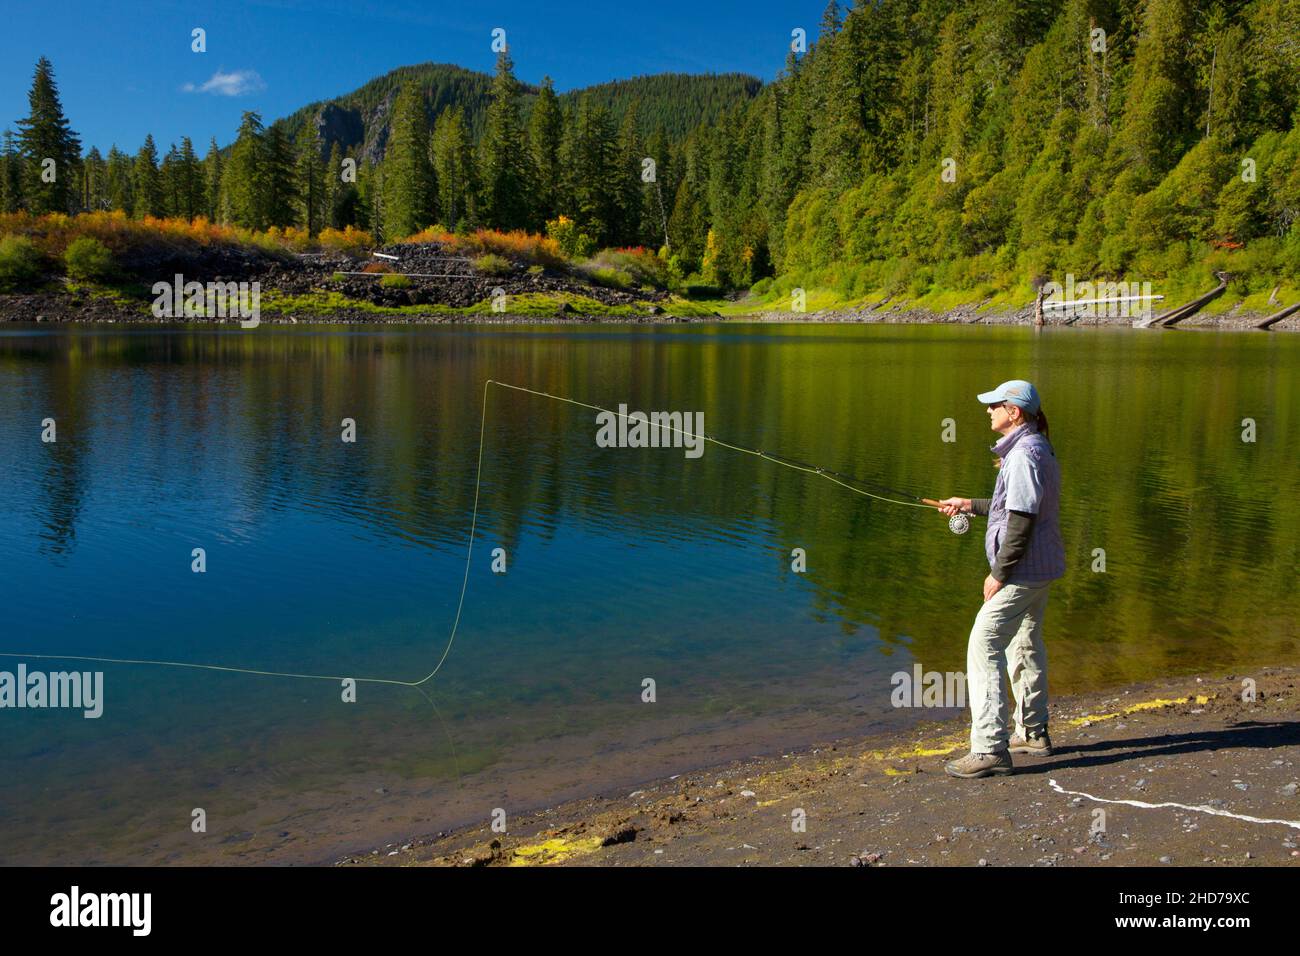 Pesca con mosca en el Lago Linton a lo largo de la ruta del Lago Linton, el Bosque Nacional Willamette, Three Sisters Wilderness, Oregón. Foto de stock